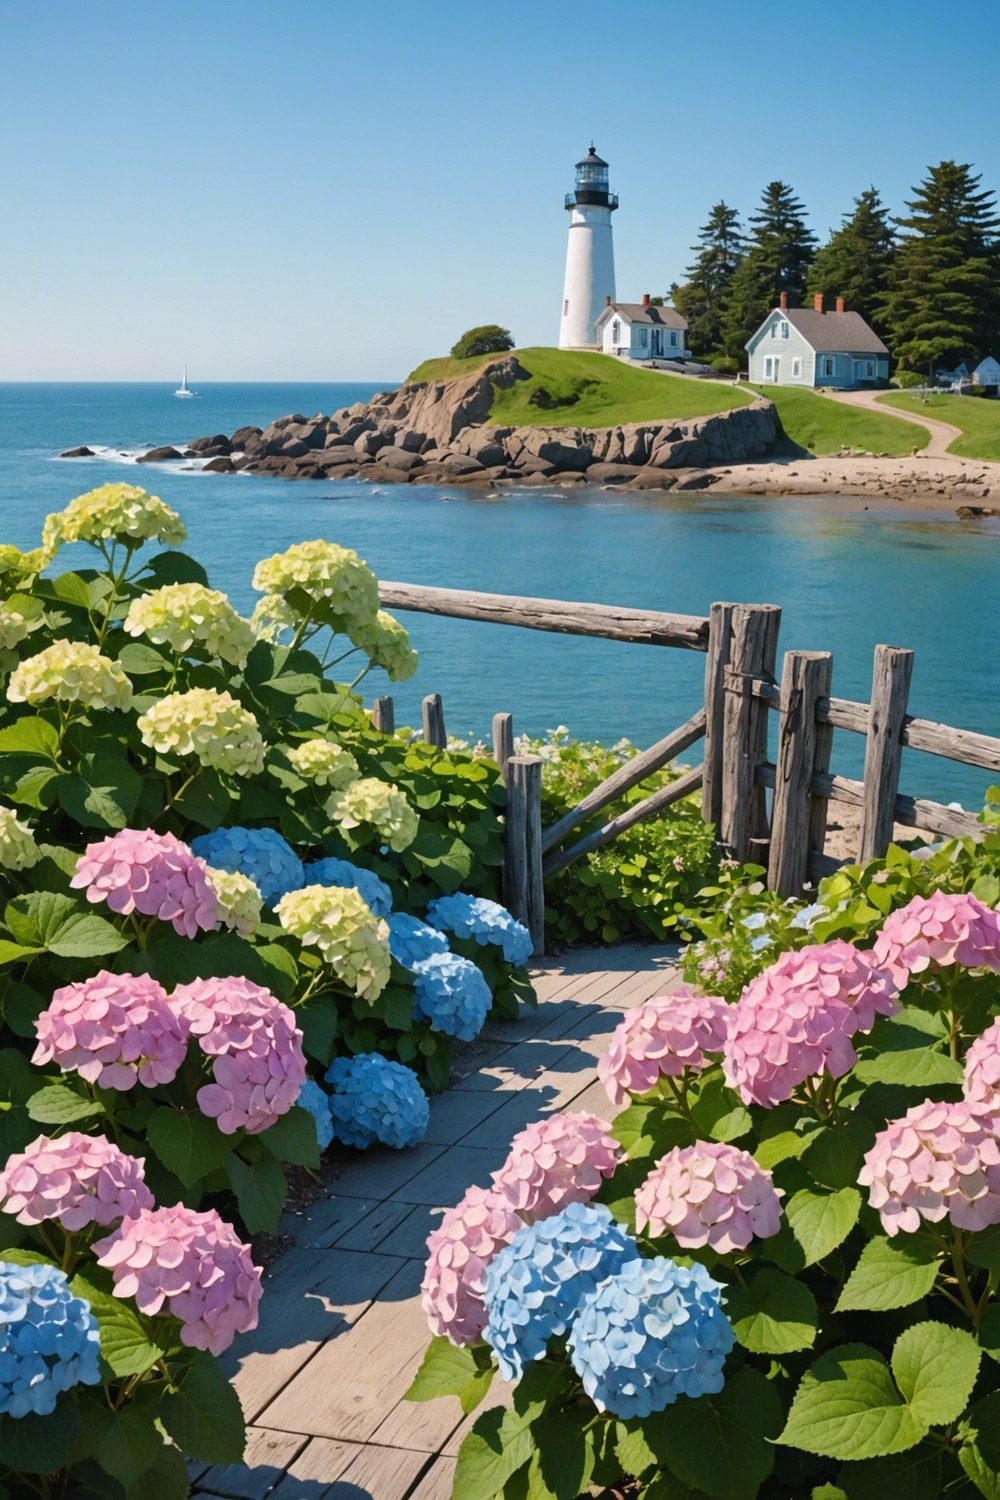 Hydrangeas in a Coastal Landscape